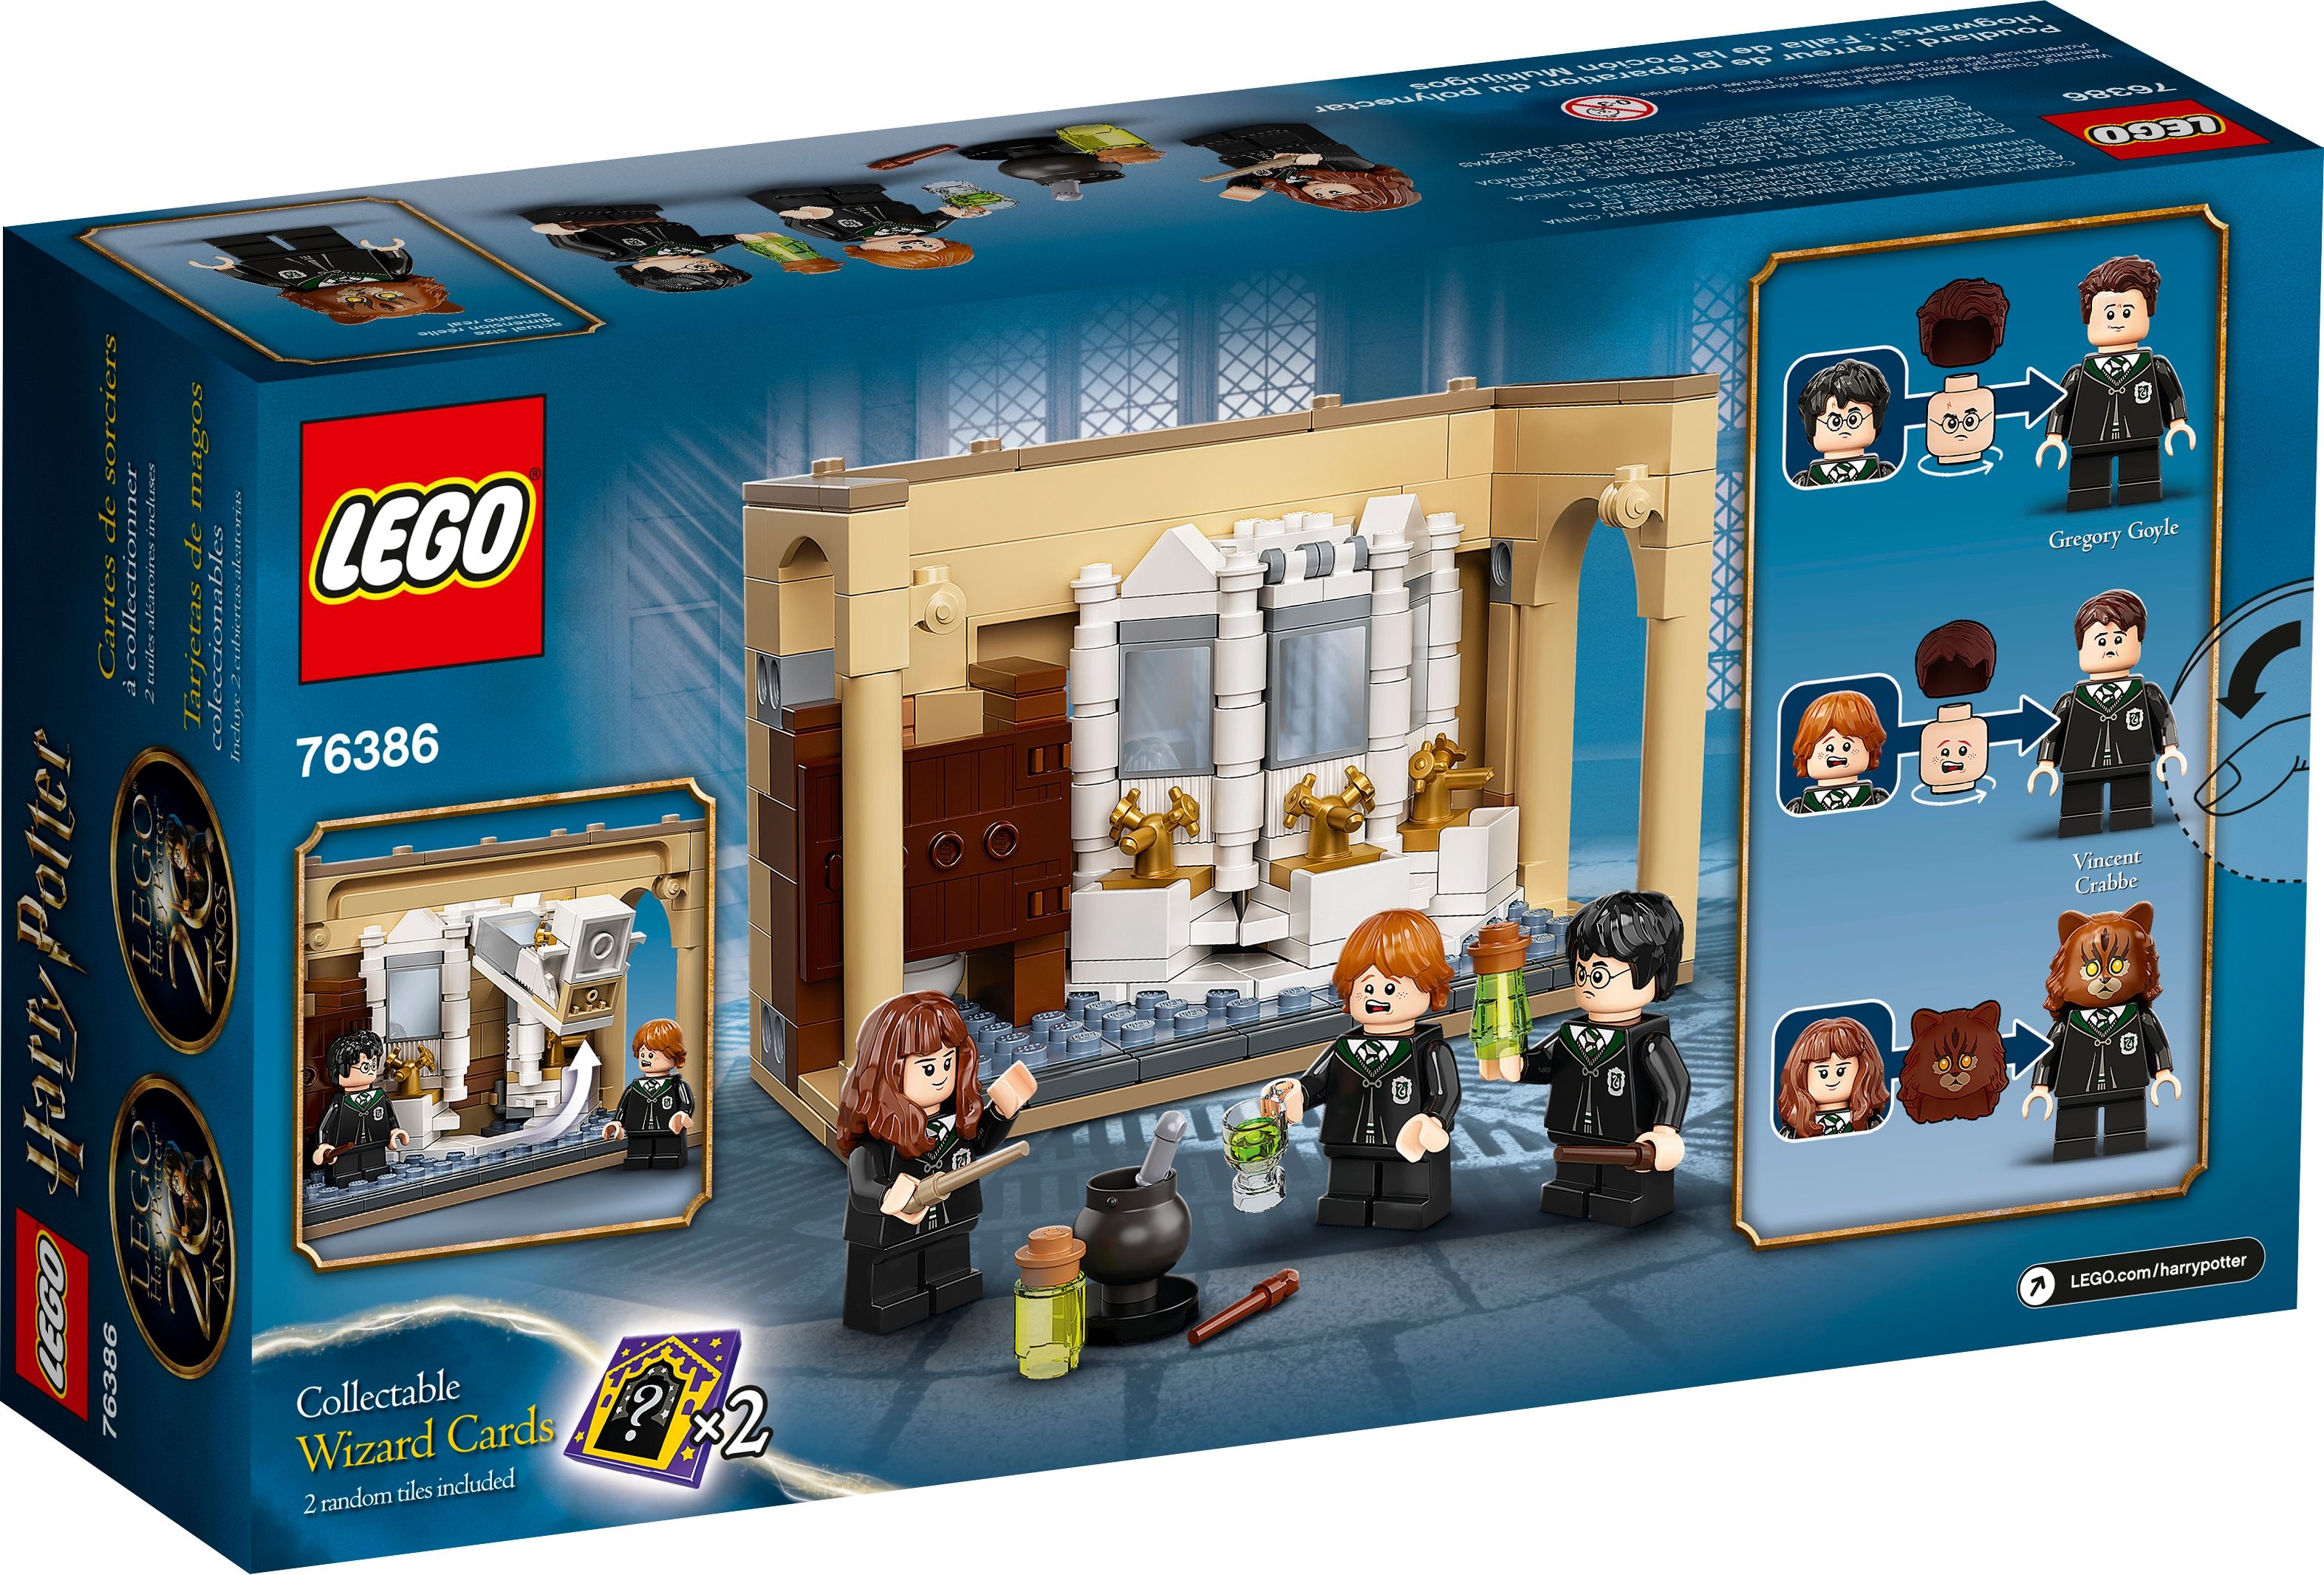 LEGO Harry Potter 76386 Hogwarts™: Misslungener Vielsafttrank LEGO_76386_box5_v39.jpg